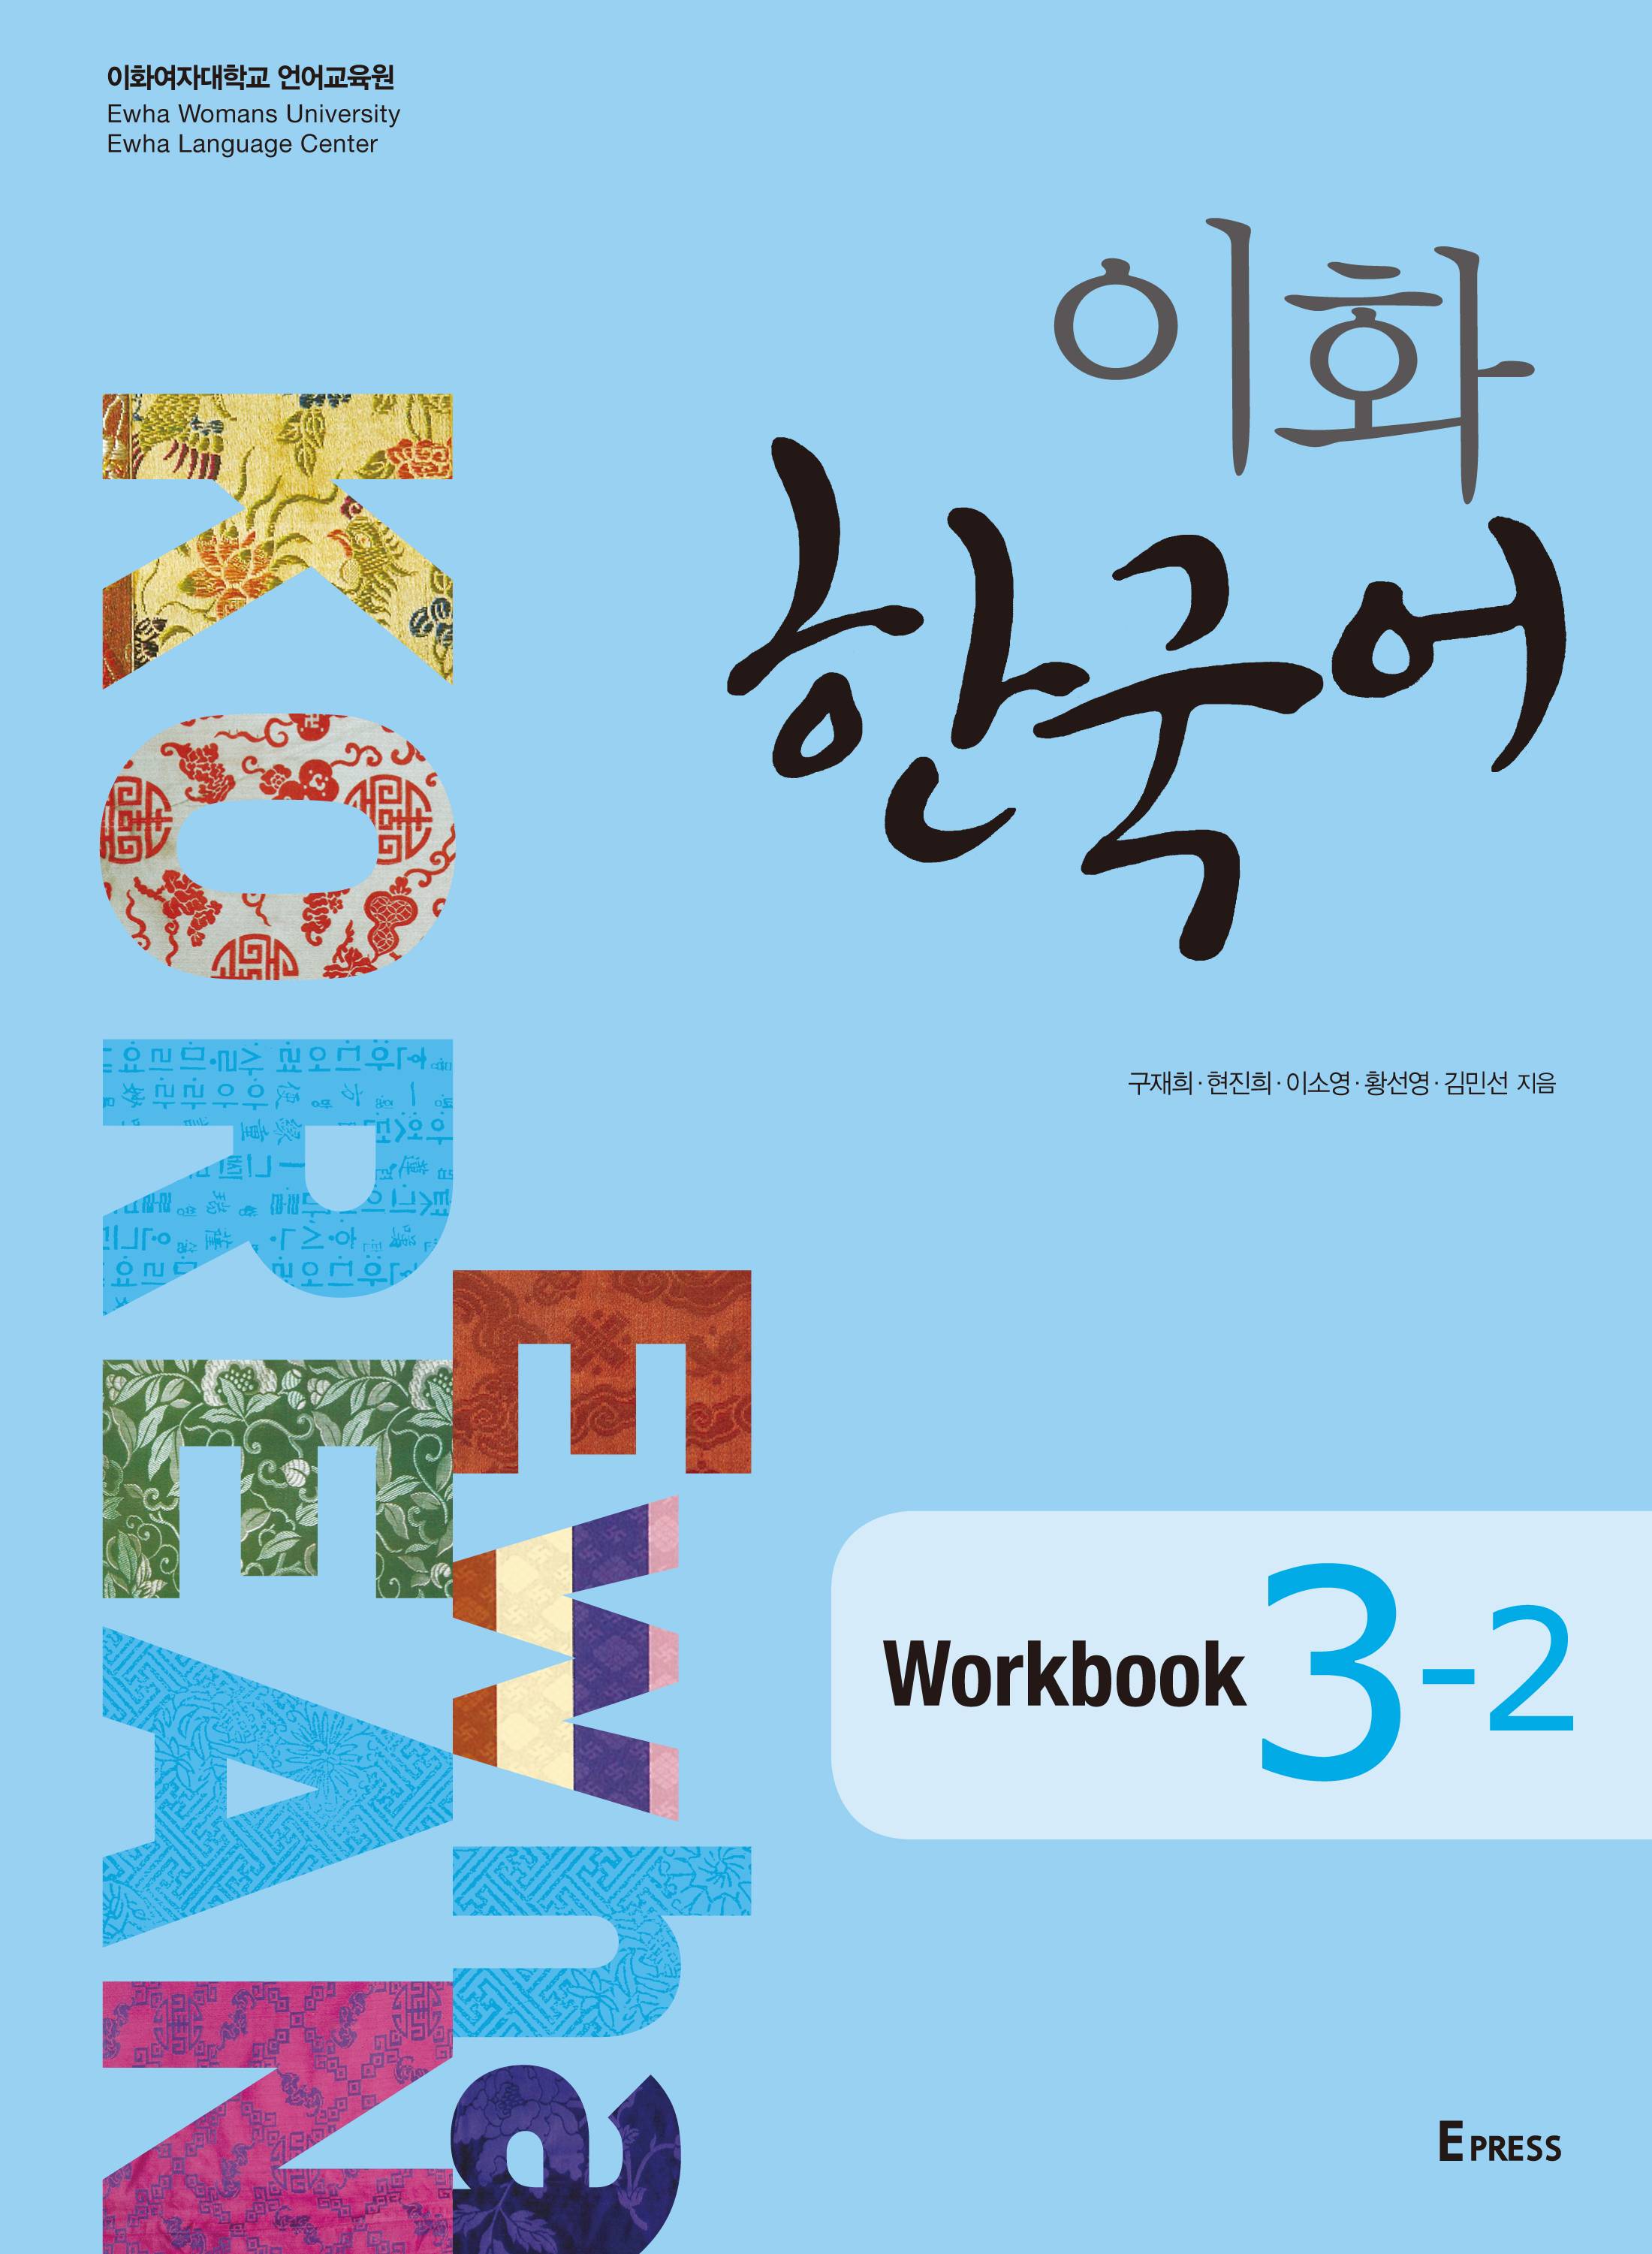 이화 한국어 Workbook 3-2 도서이미지